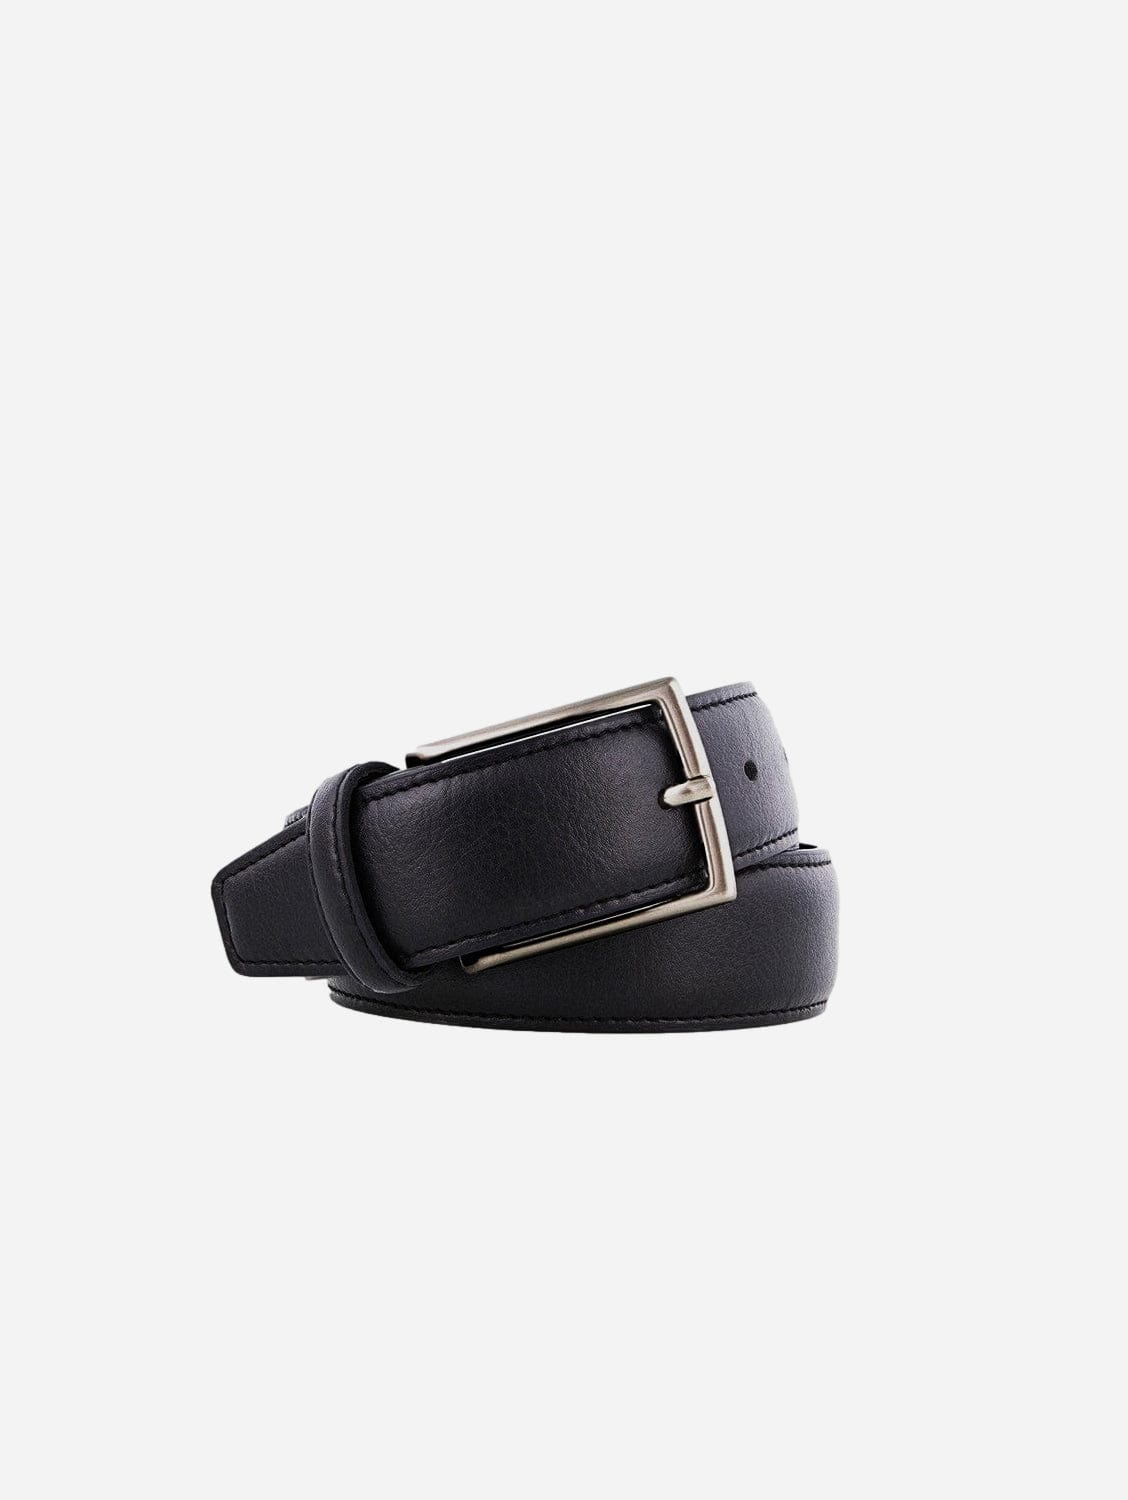 NOAH - Italian Vegan Shoes Vegan belt Cinta black 35 matt